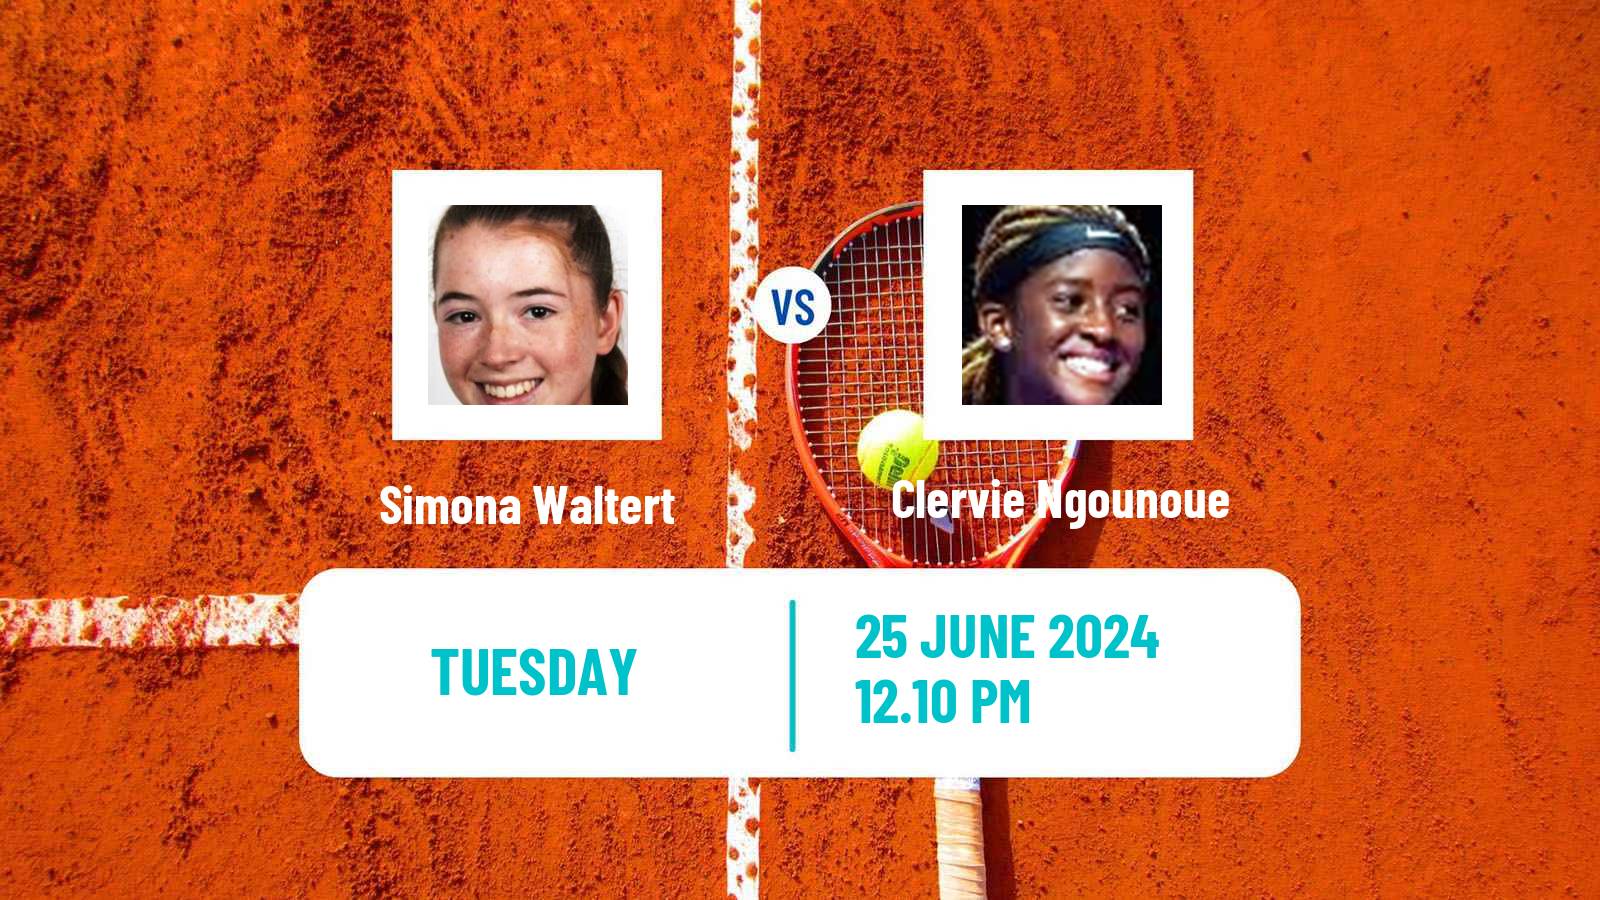 Tennis WTA Wimbledon Simona Waltert - Clervie Ngounoue